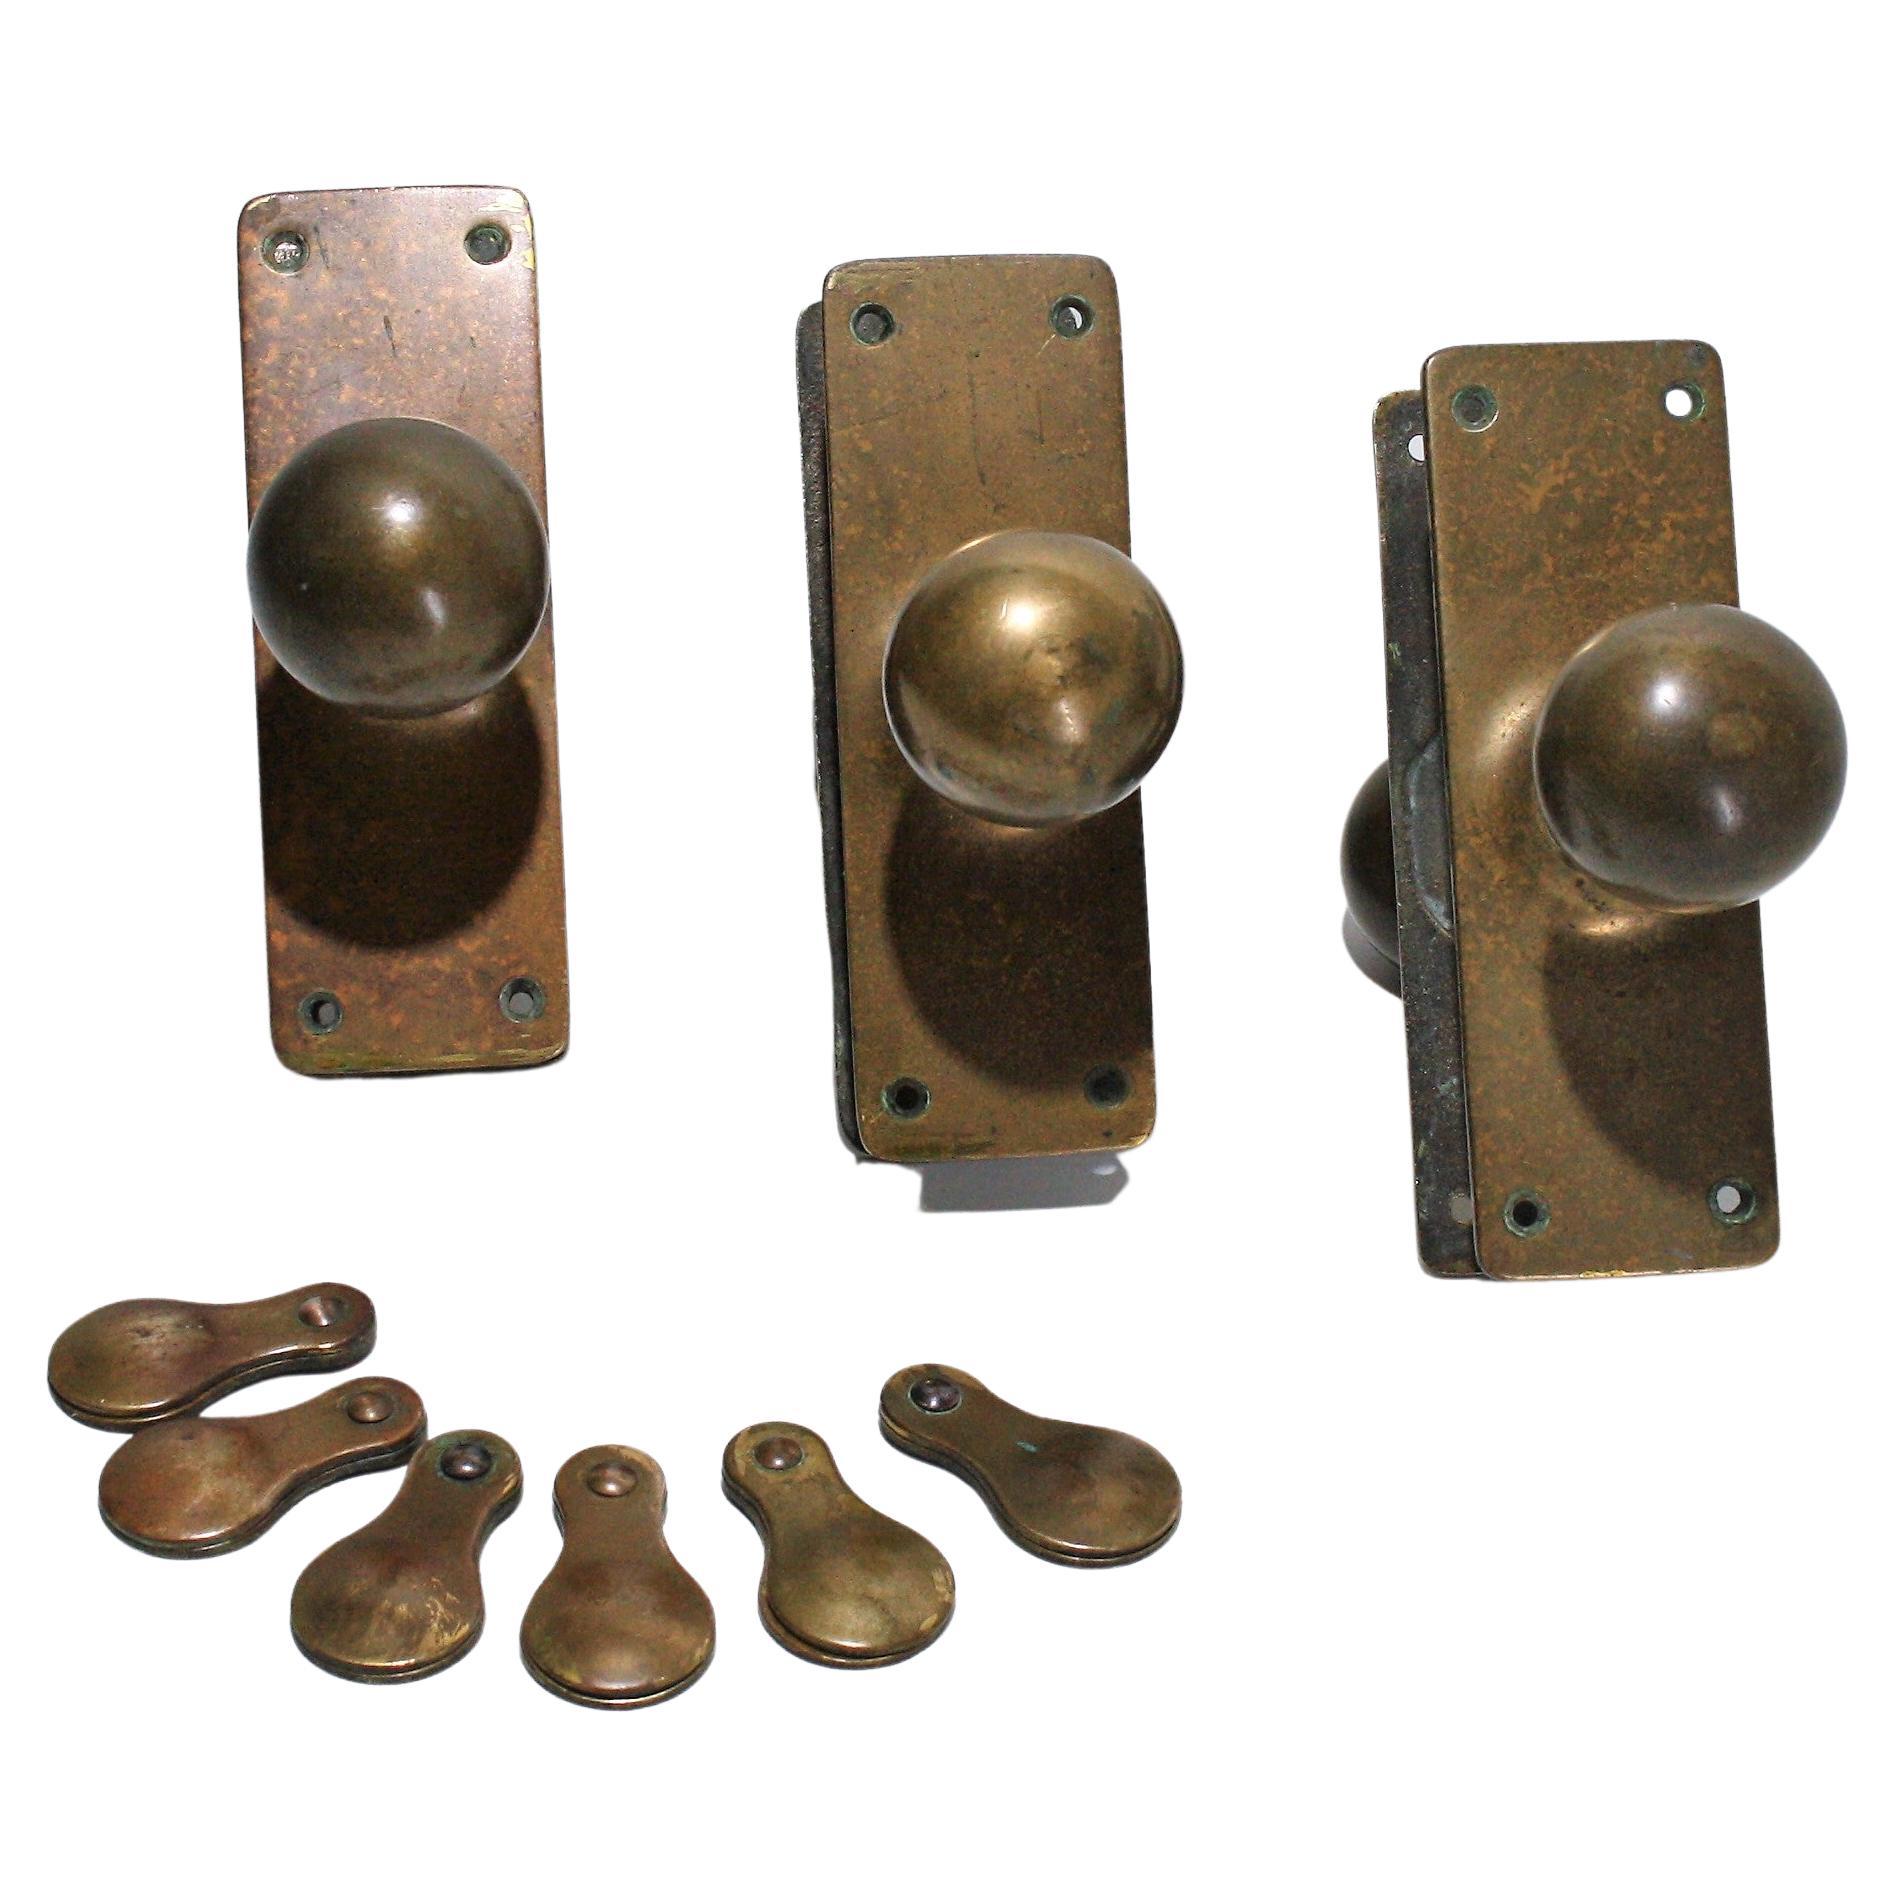 Original Phosphor Bronze Brass Door Handles & Escutcheons 3 matching sets For Sale